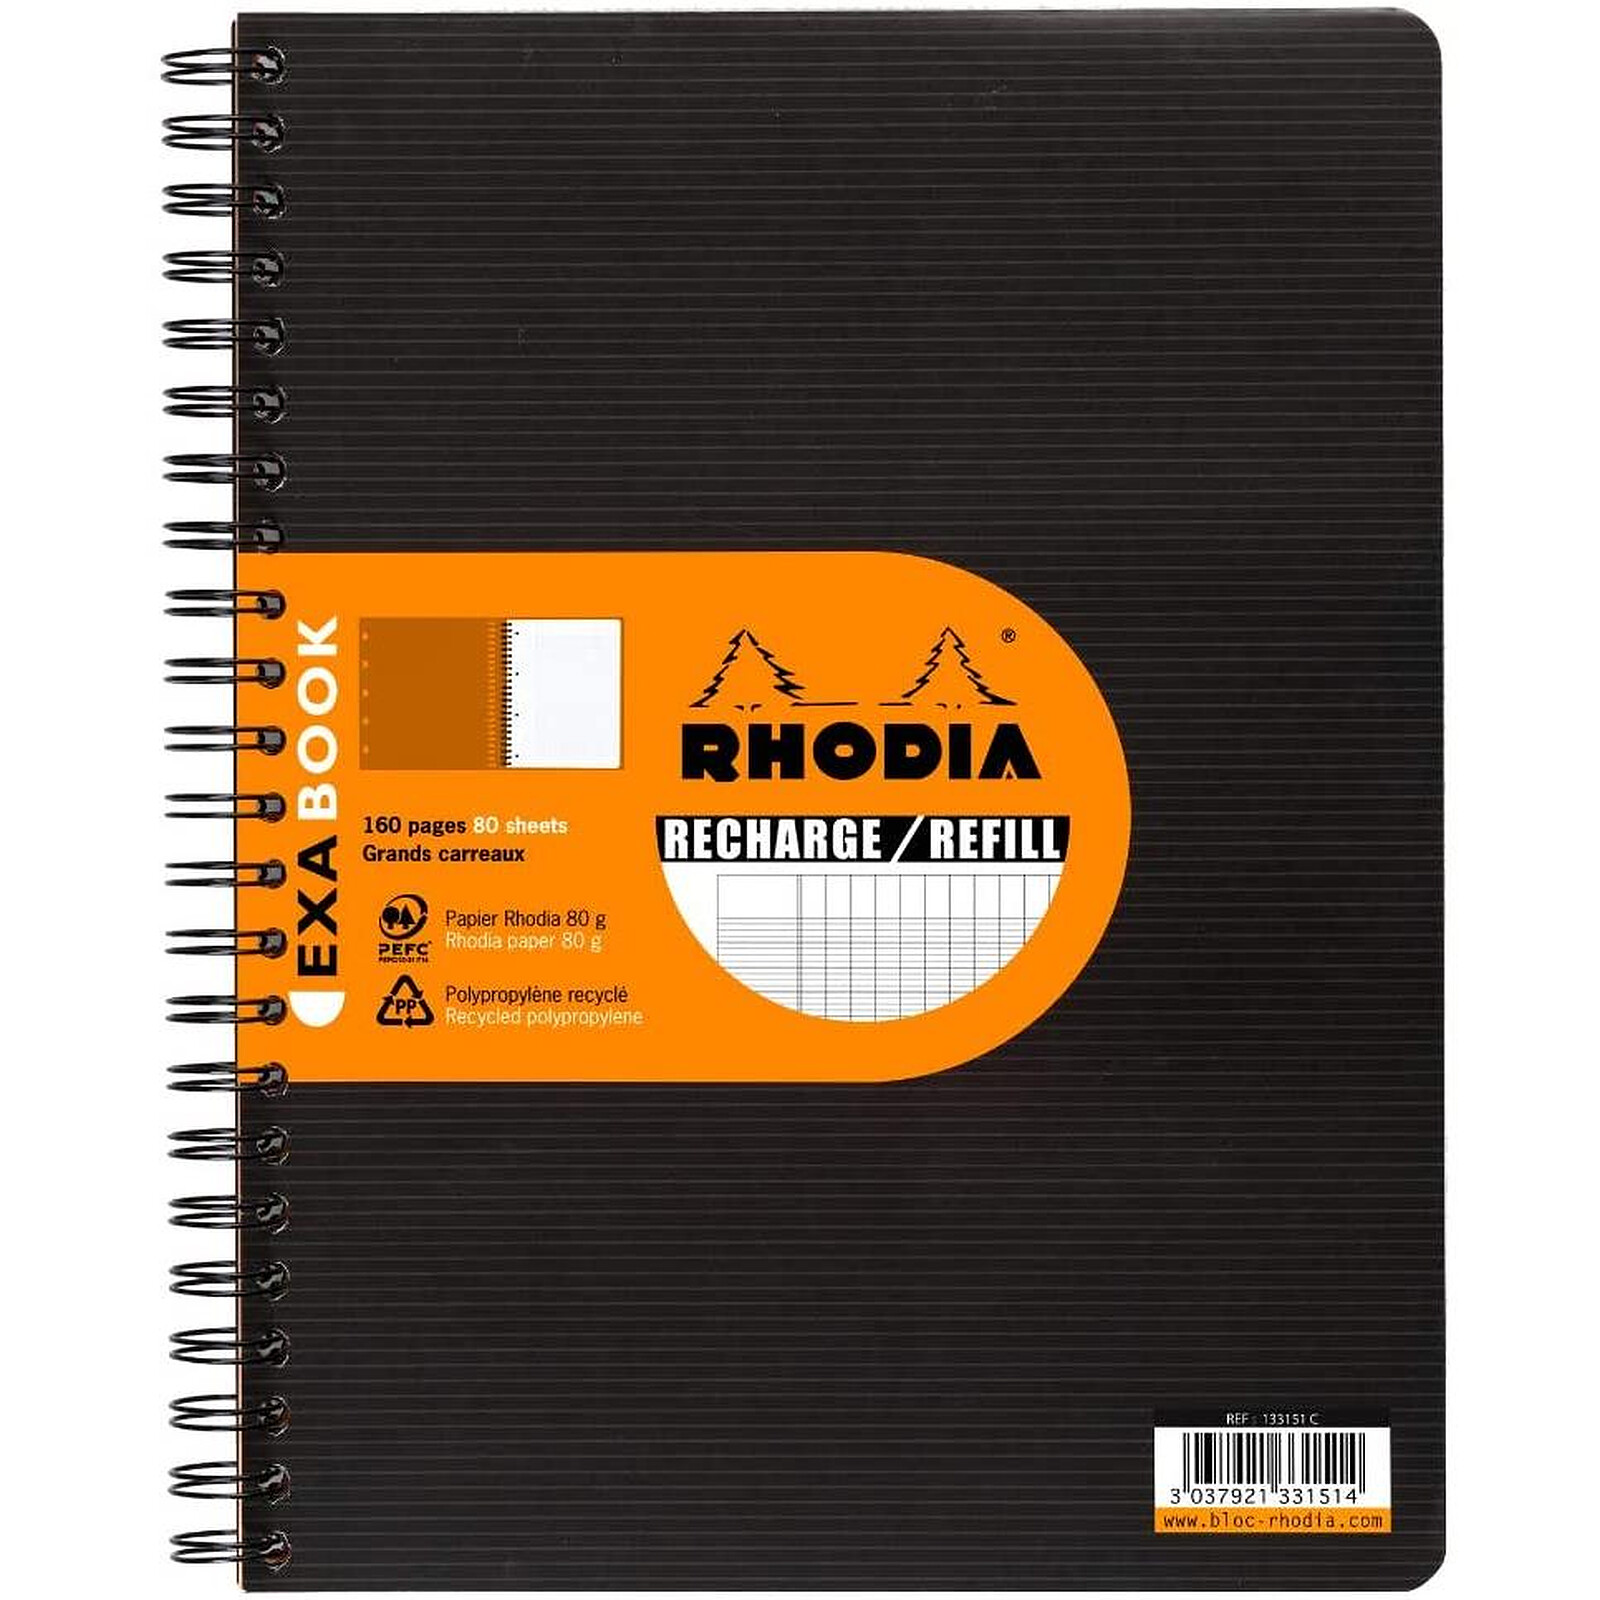 Rhodia Bloc N°19 Orange agrafé en-tête 21 x 31.8 cm ligné avec marge 160  pages